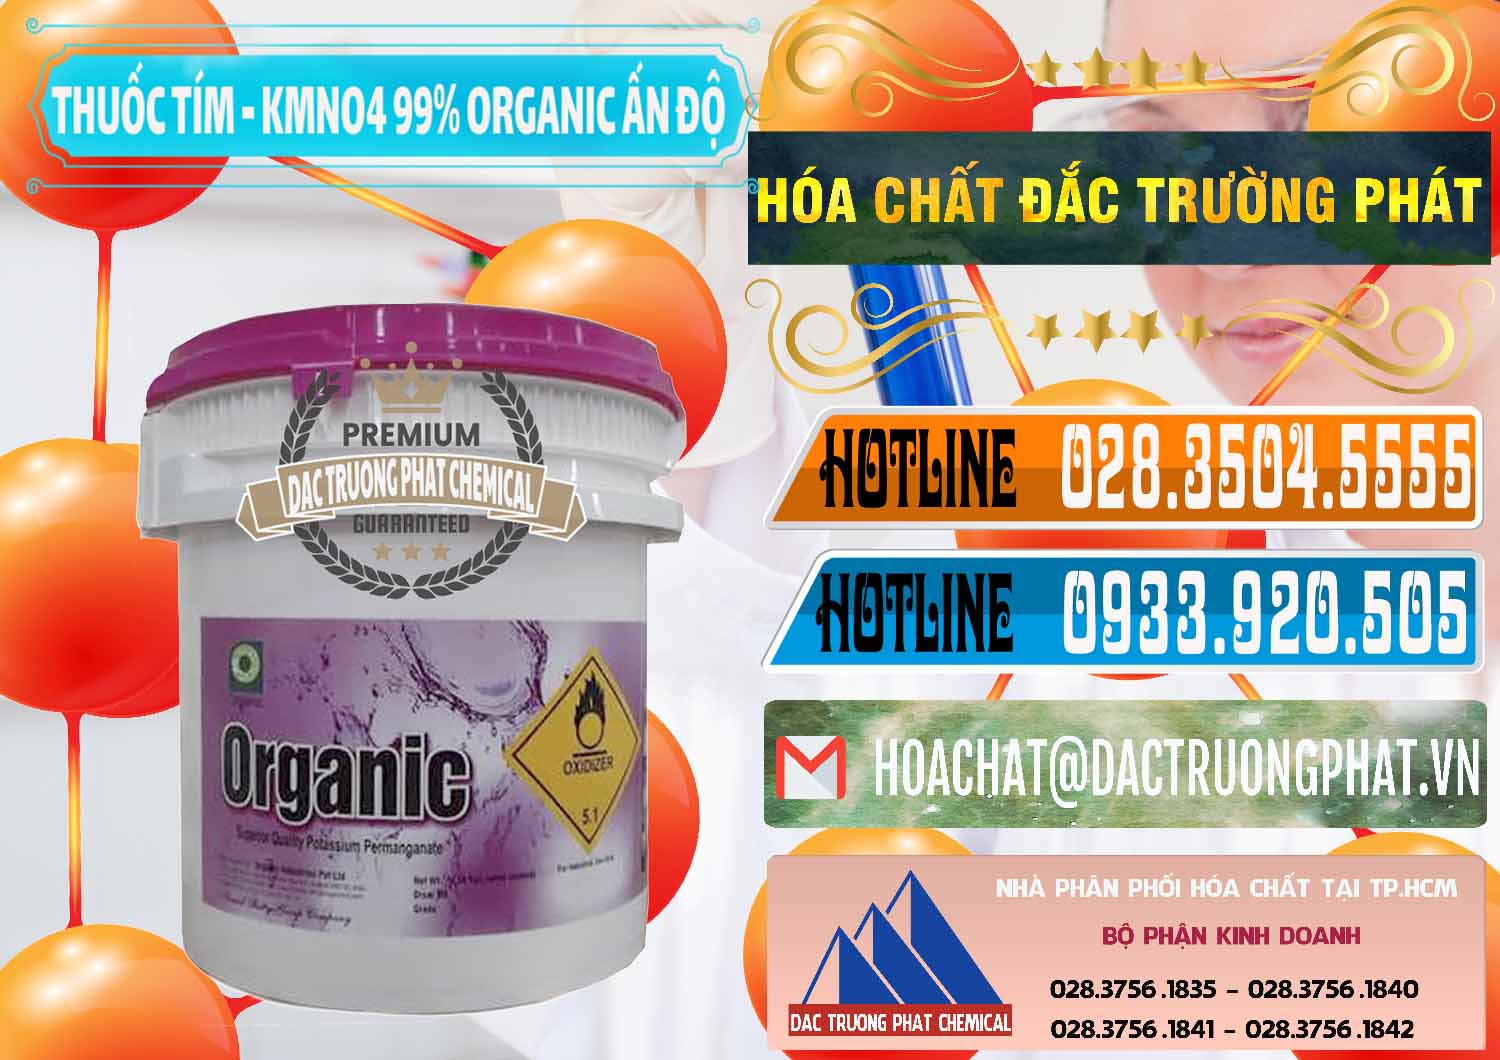 Cty kinh doanh & bán Thuốc Tím - KMNO4 99% Organic Ấn Độ India - 0216 - Chuyên phân phối ( cung ứng ) hóa chất tại TP.HCM - stmp.net